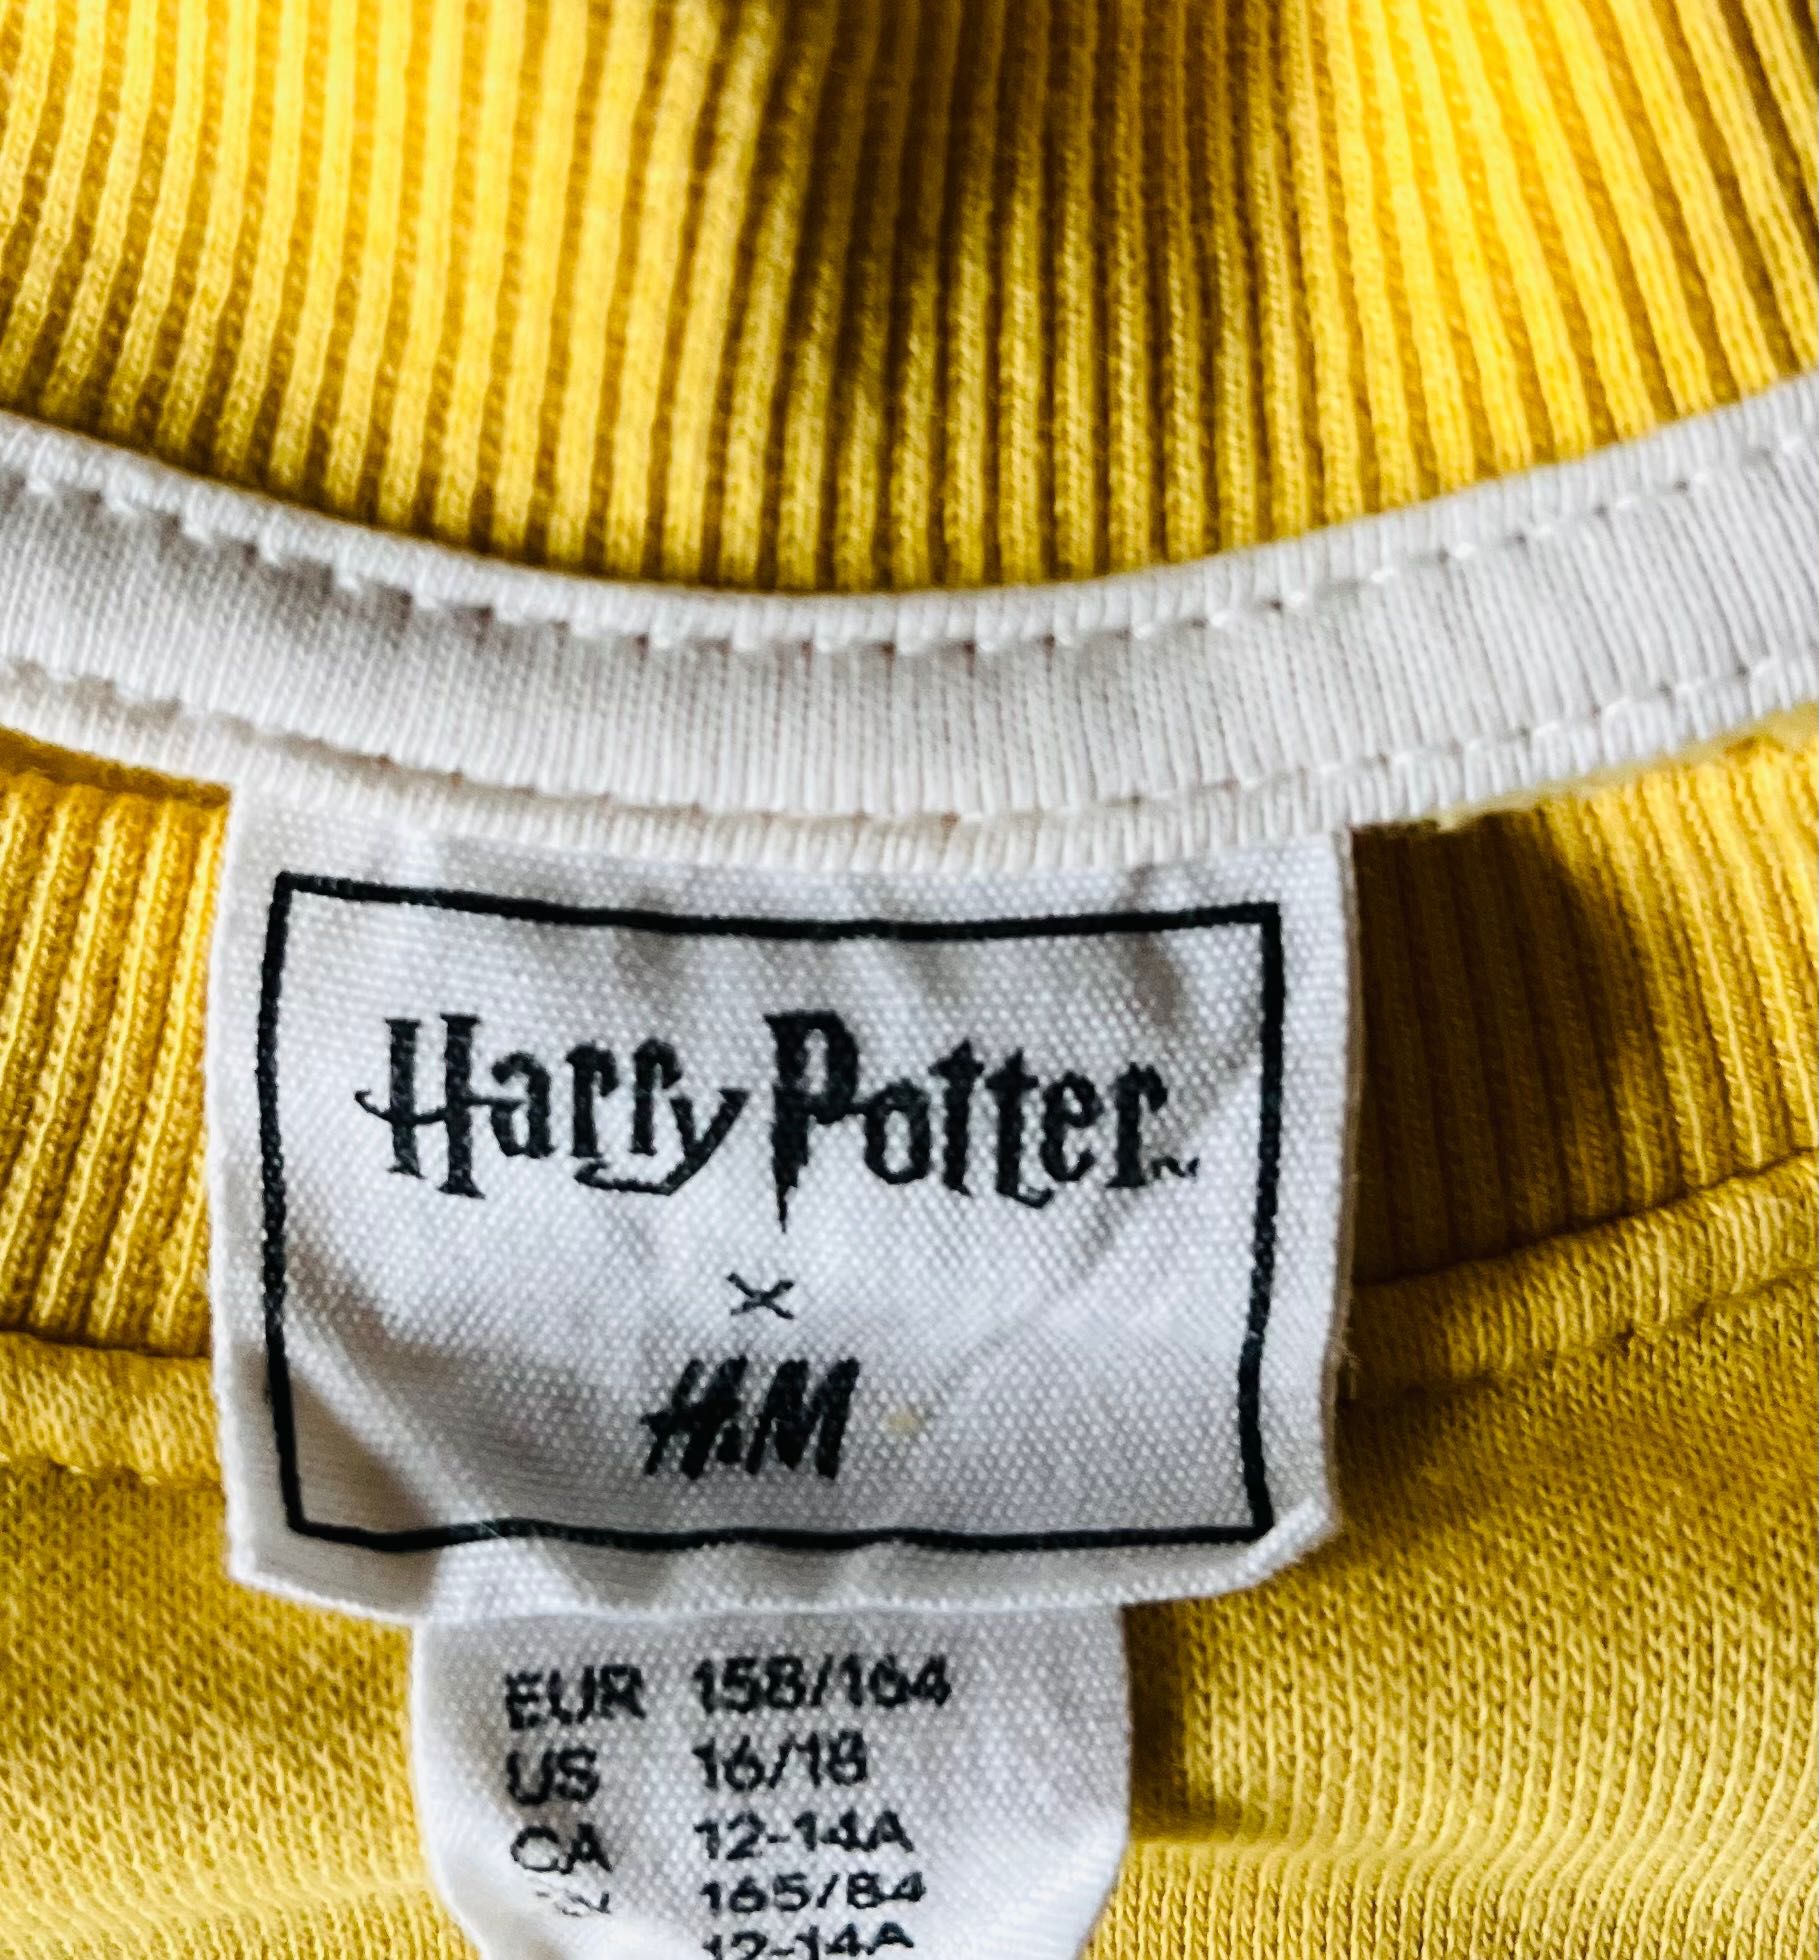 Bluza H&M Harry Potter roz. 158/164